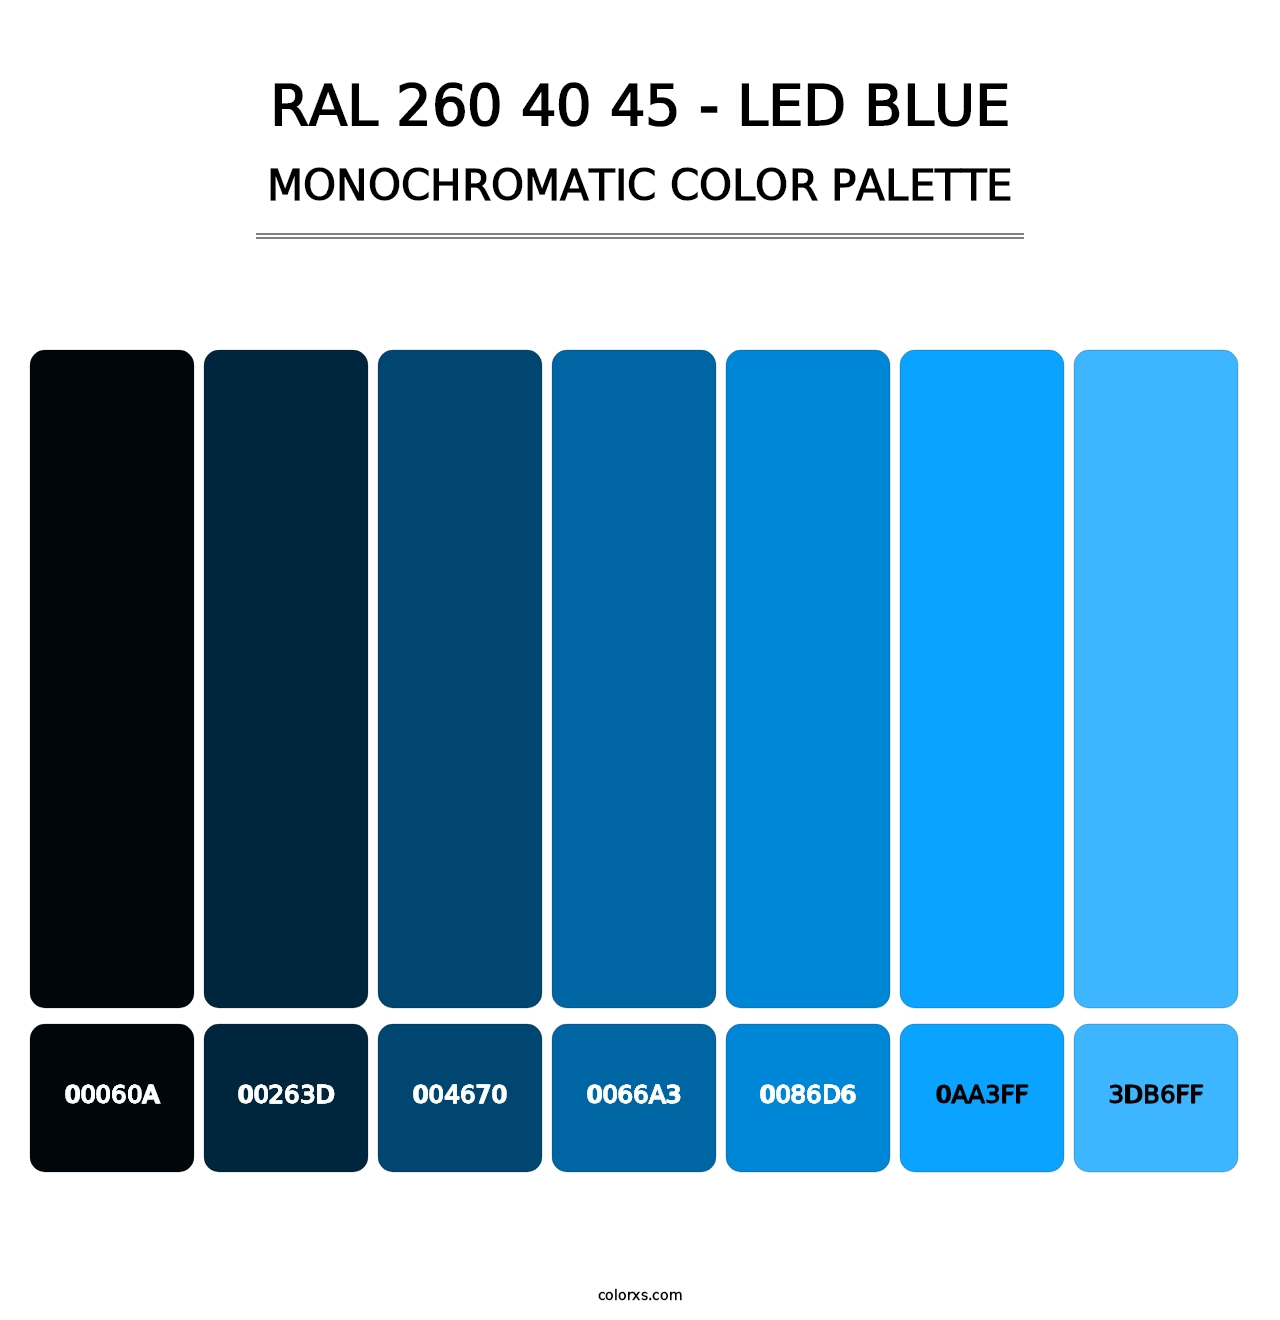 RAL 260 40 45 - LED Blue - Monochromatic Color Palette